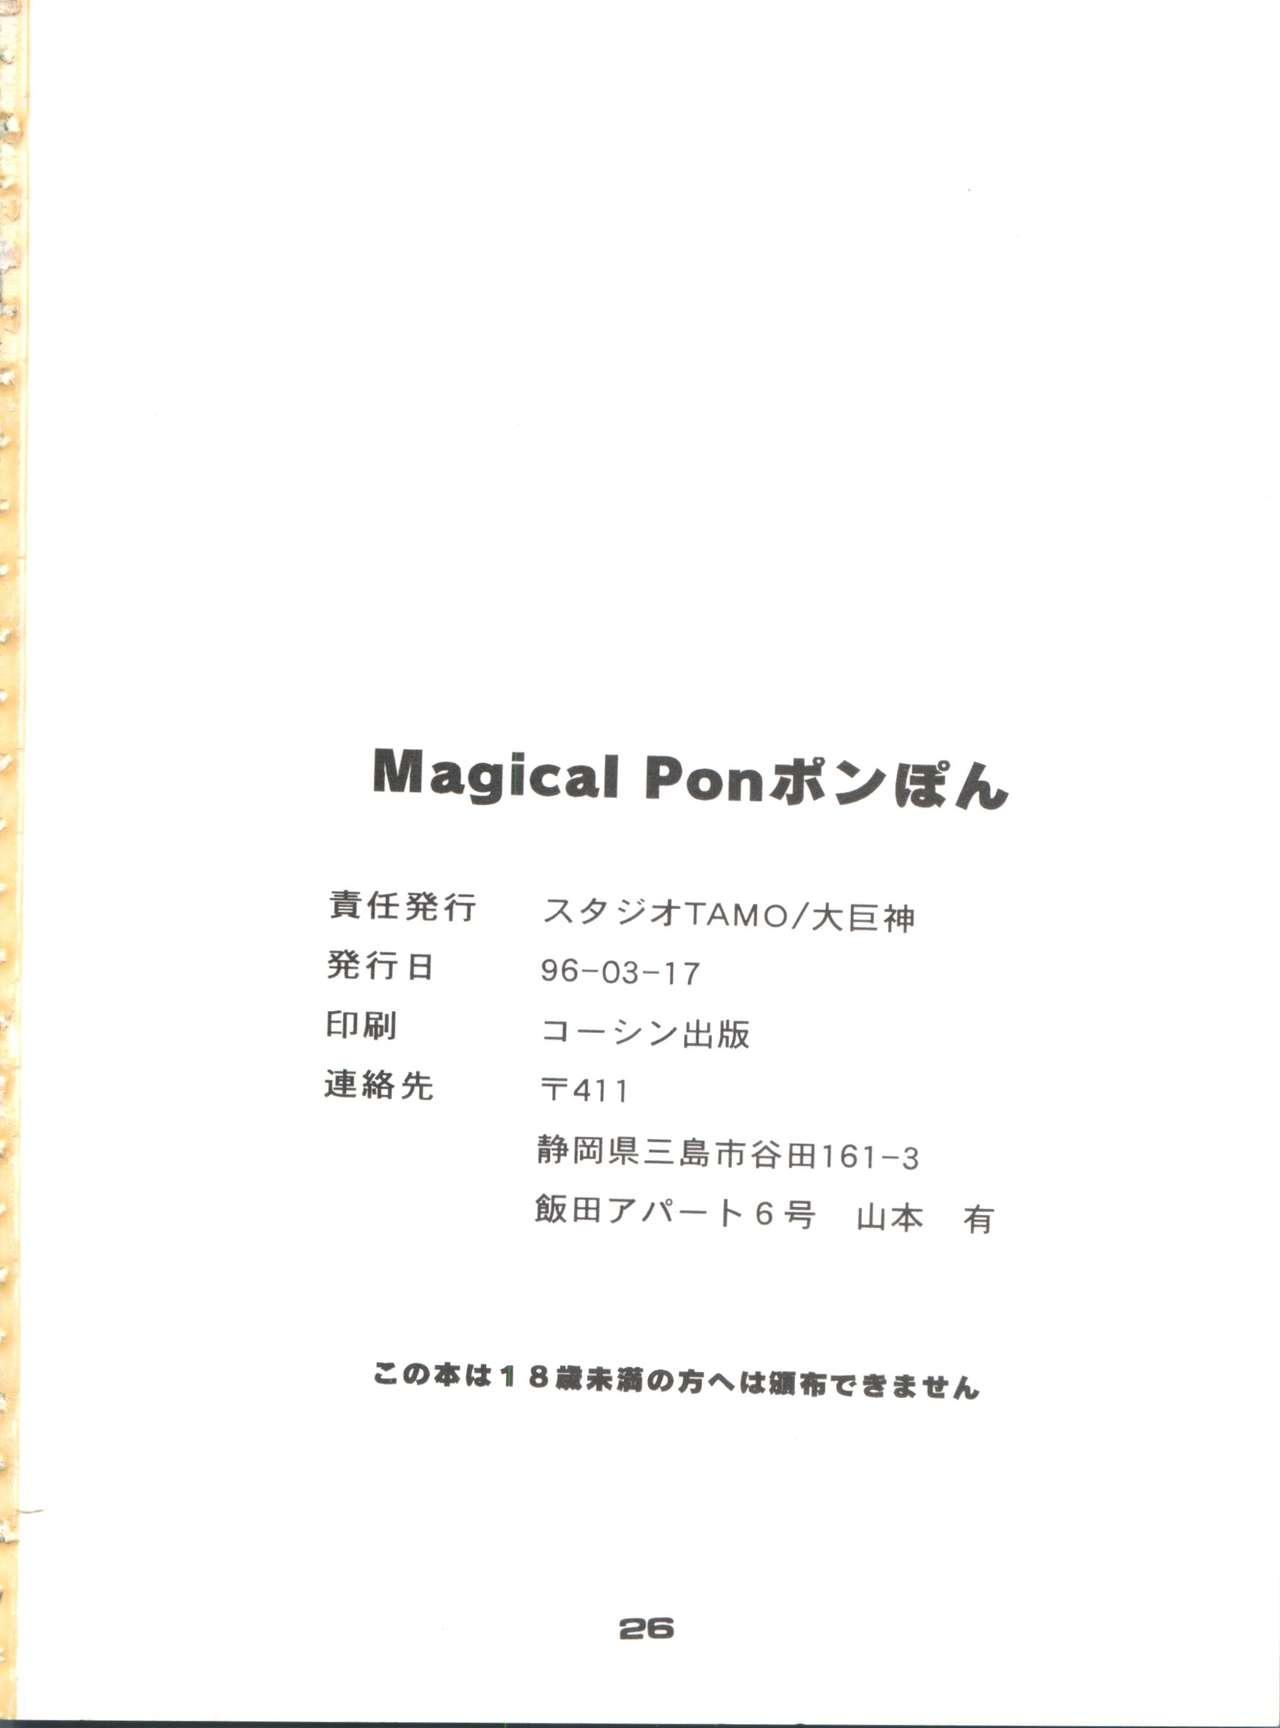 Branquinha Magical Ponponpon Returns - Magical emi Black - Page 25